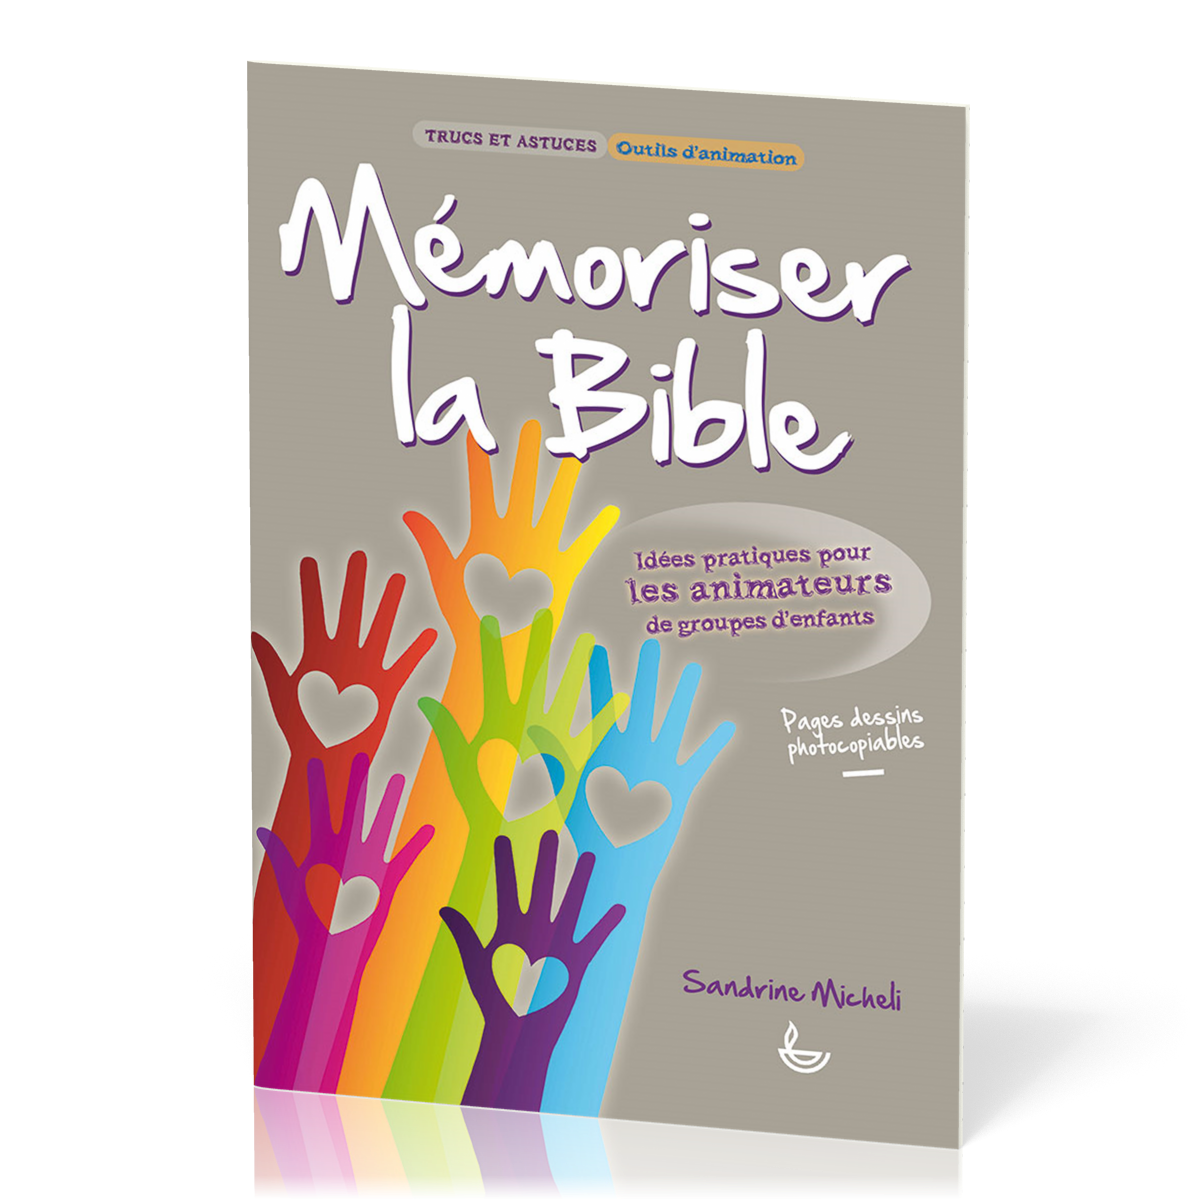 MEMORISER LA BIBLE - IDEES PRATIQUES POUR LES ANIMATEURS DE GROUPES D'ENFANTS